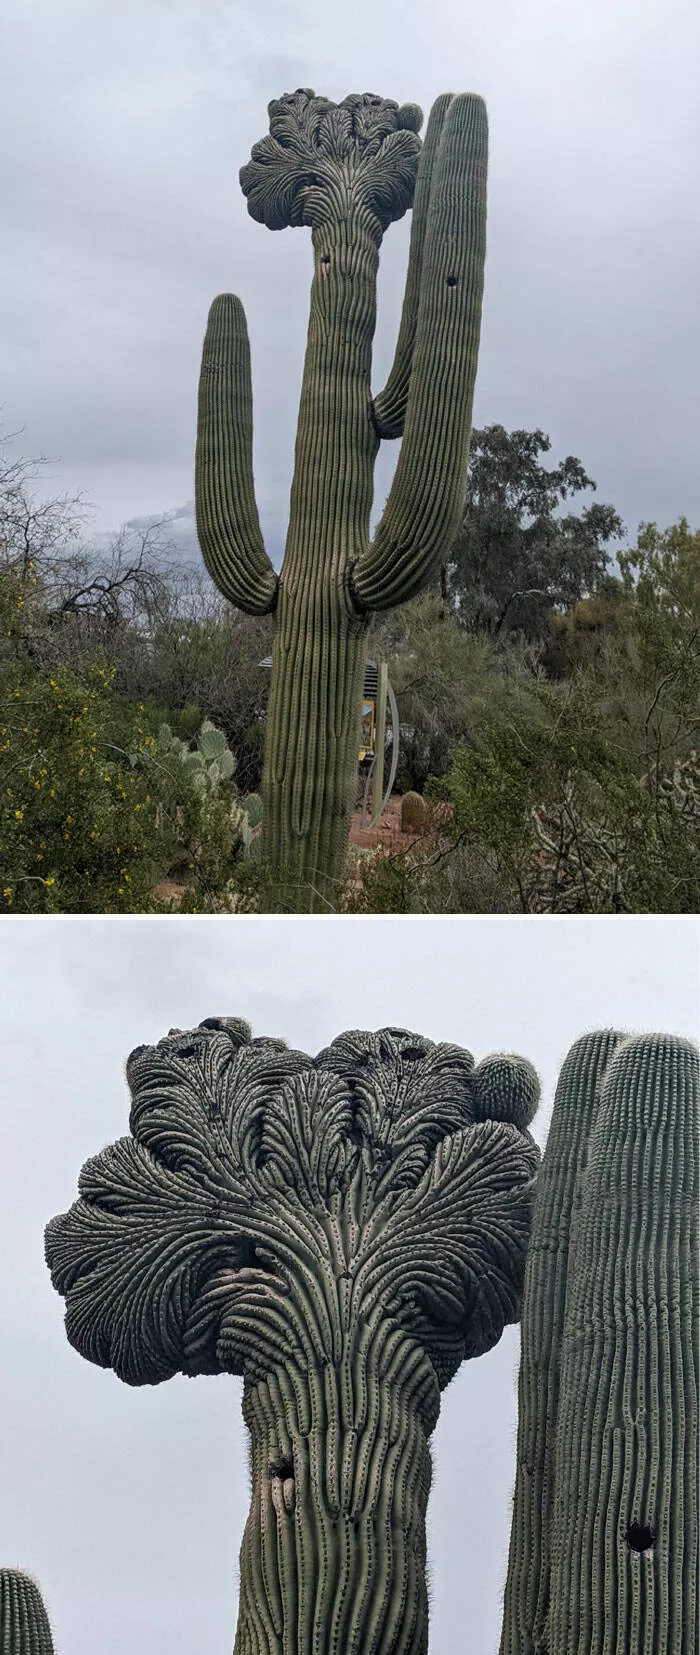 Merveilles florales dvoiler lvolution unique de la flore fascie - #6 Spécimen de Saguaros Fascié